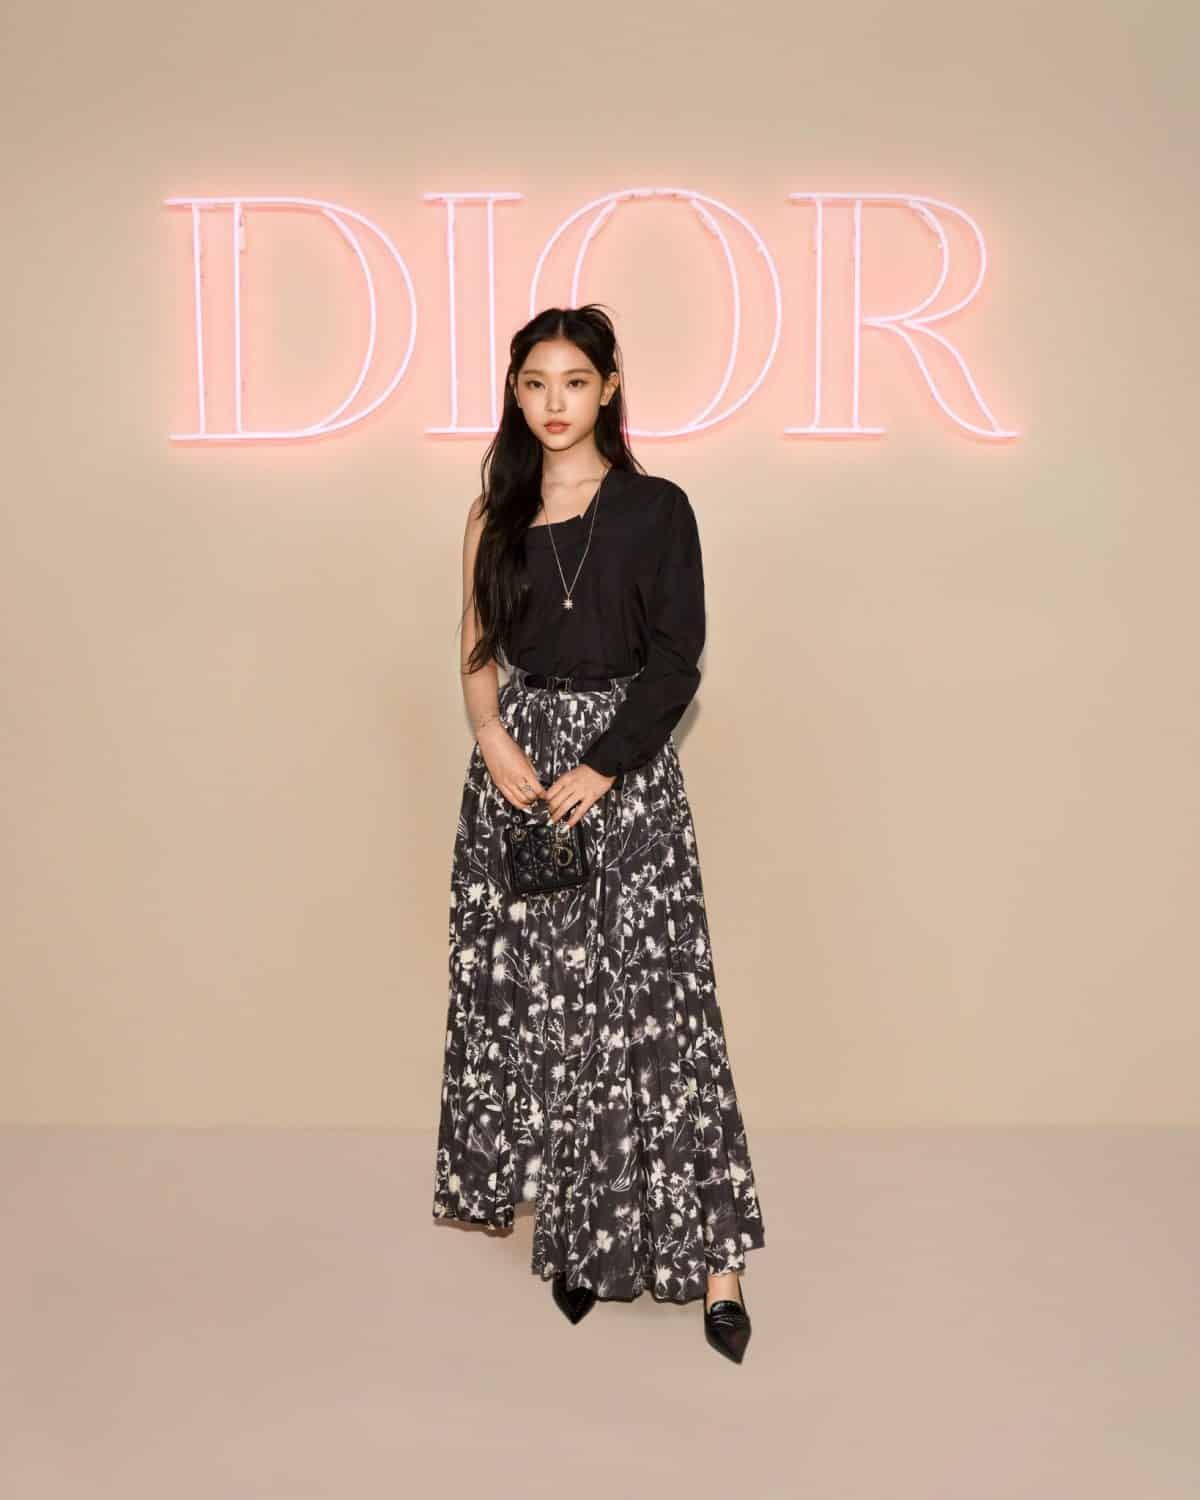 Хэрин из NewJeans привлекла внимание на показе Dior в Нью-Йорке